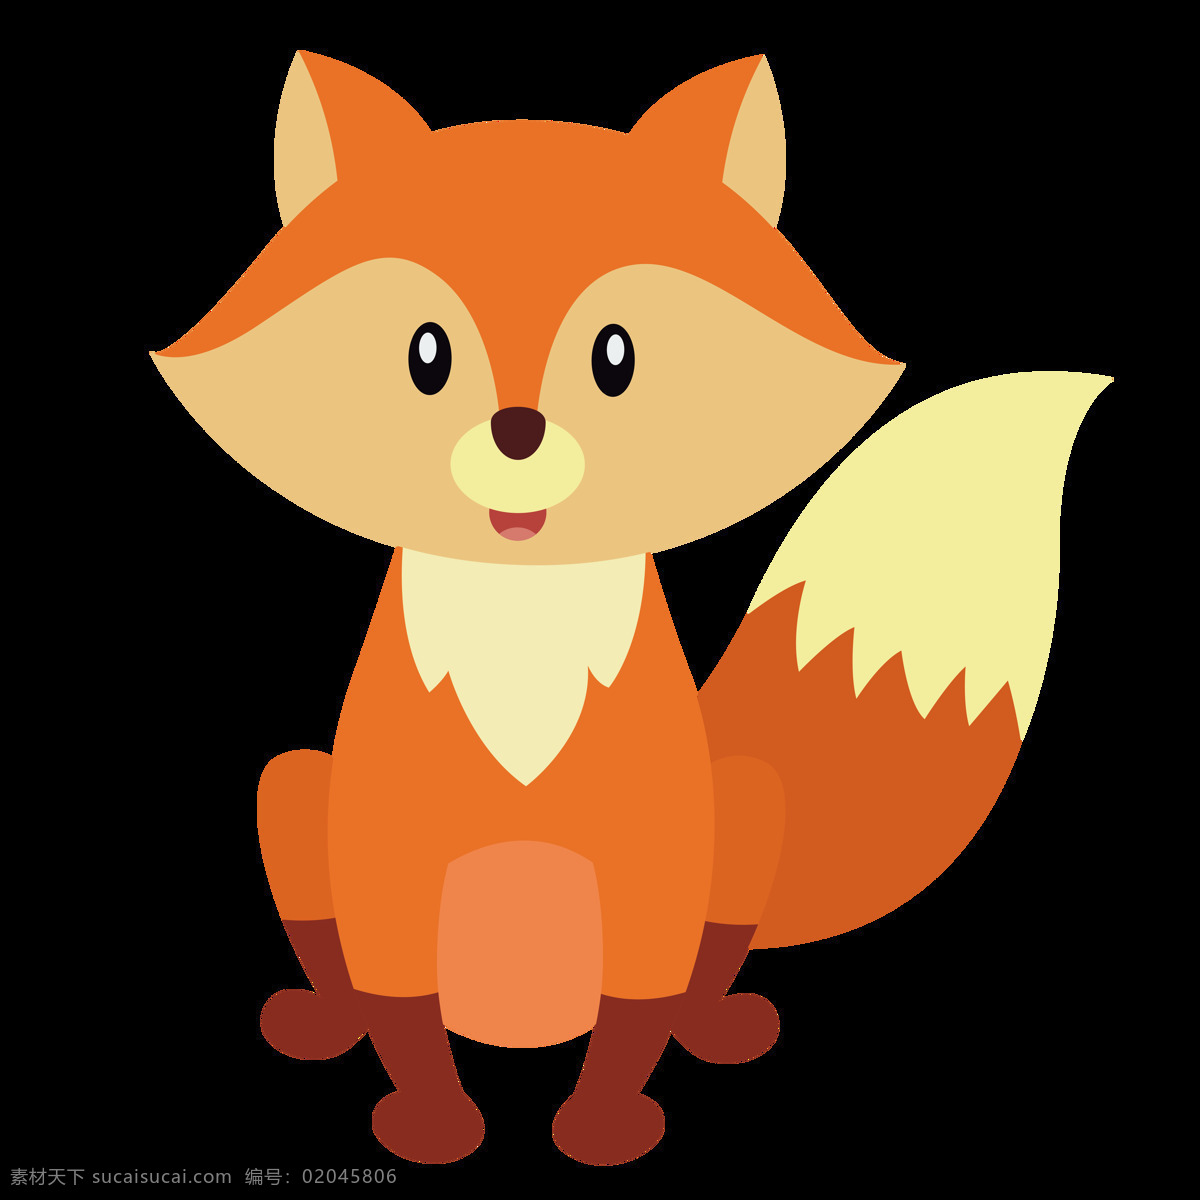 透明底狐狸 狐狸 卡通狐狸 动物 卡通 狐狸剪影 png图片